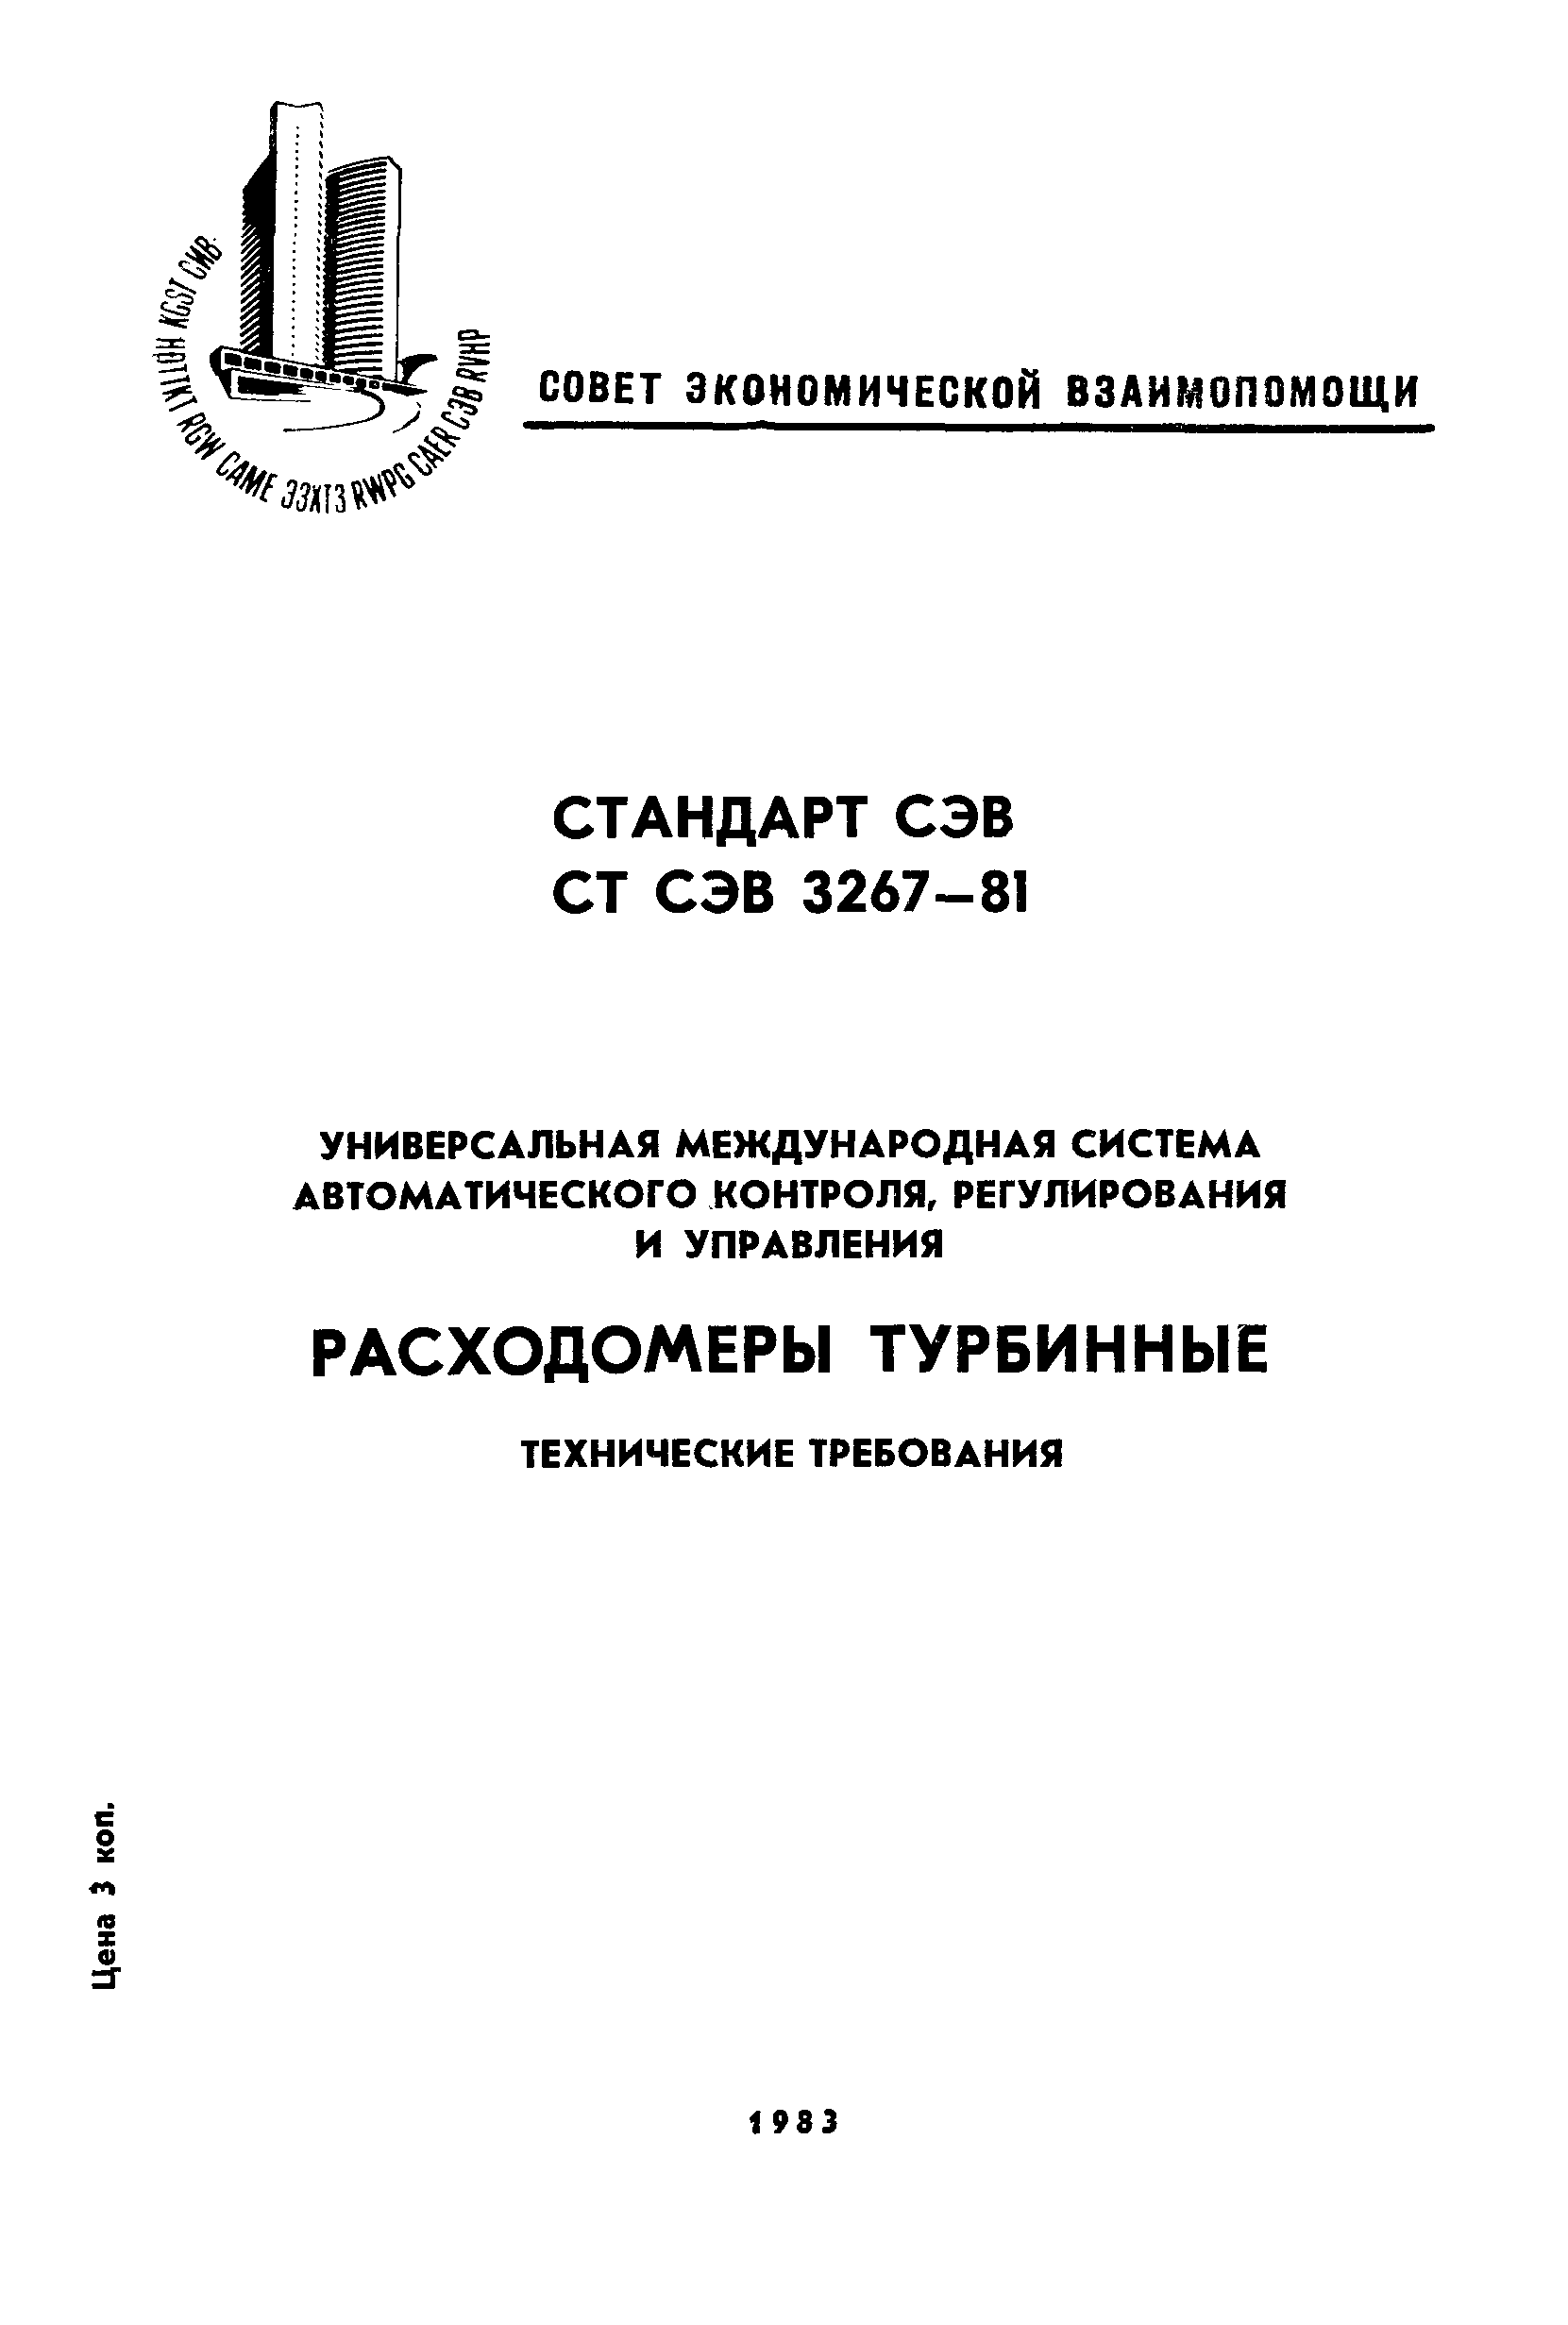 СТ СЭВ 3267-81